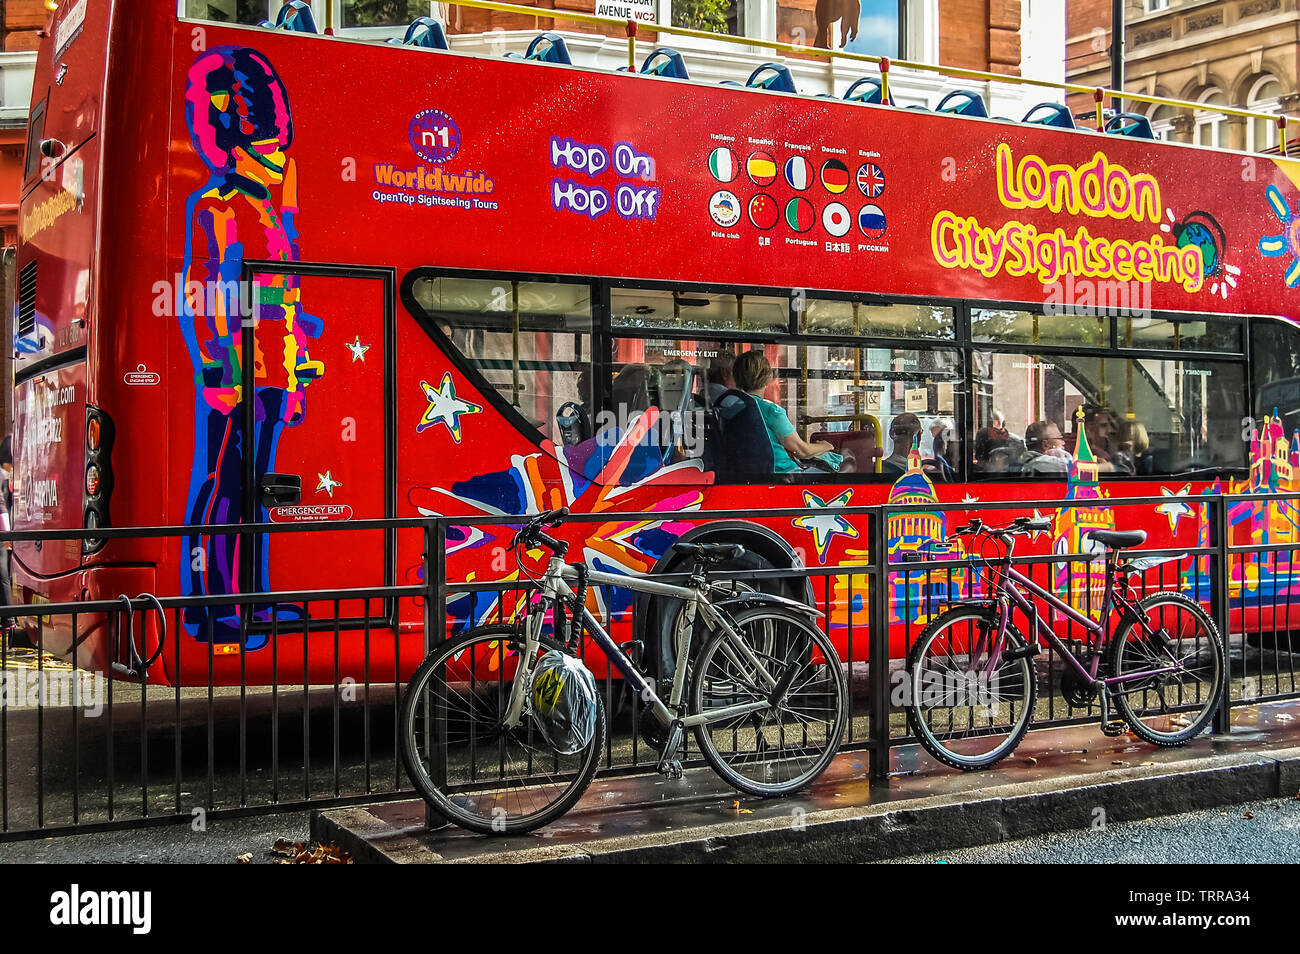 London City Sightseeing Bus, stoppte an der Ampel. Dies ist einer der beste Weg, die meisten von London in kurzer Zeit zu genießen Stockfoto